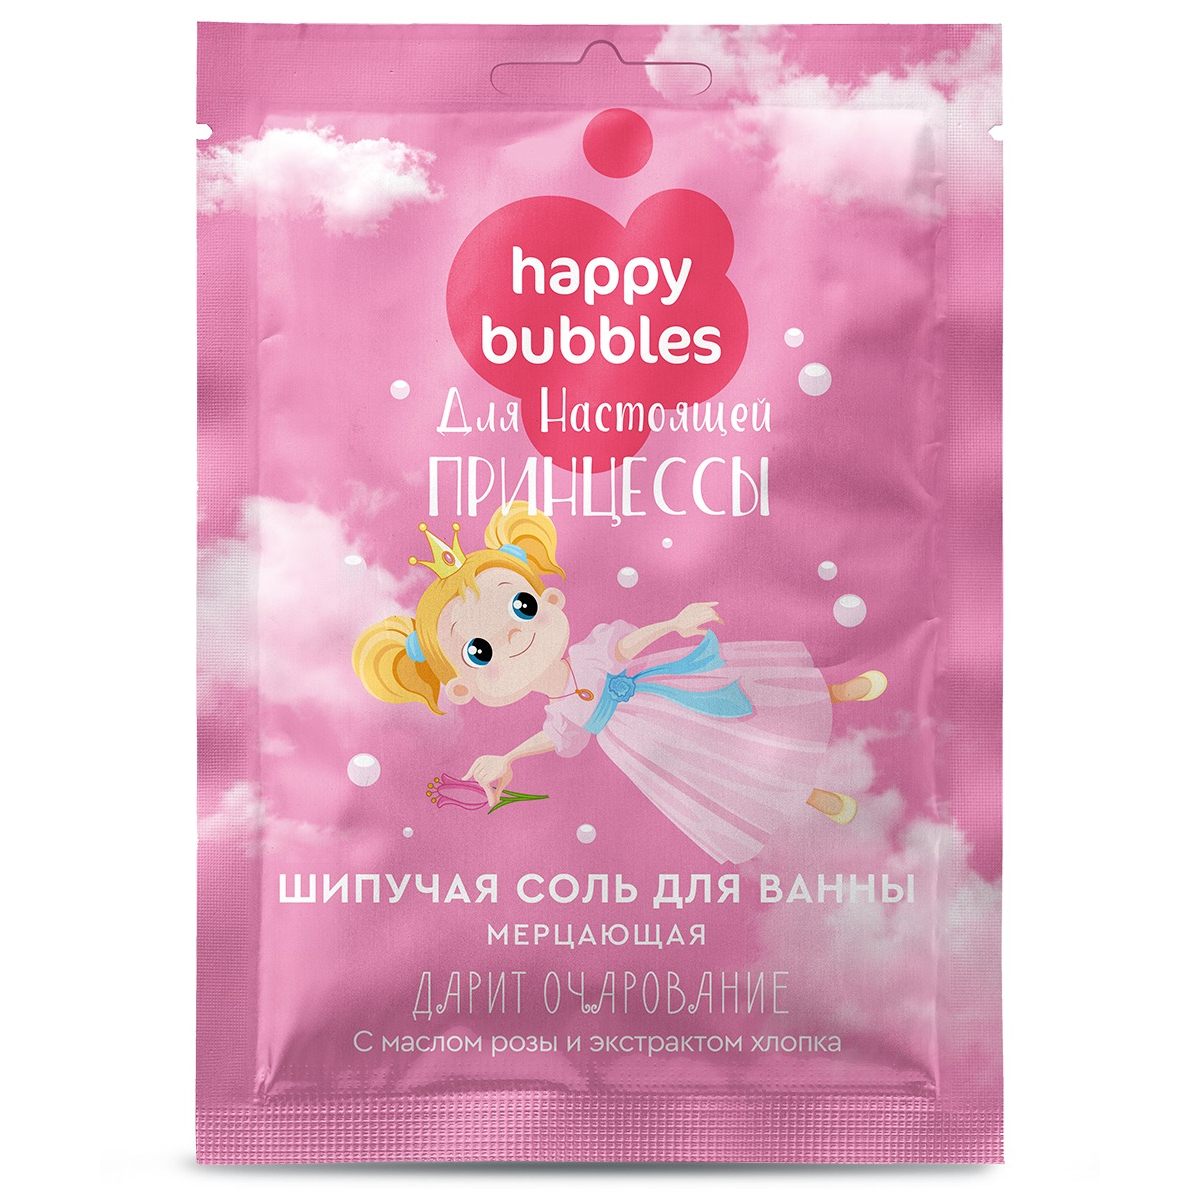 Соль для ванны Happy bubbles мерцание для настоящей принцессы 100г